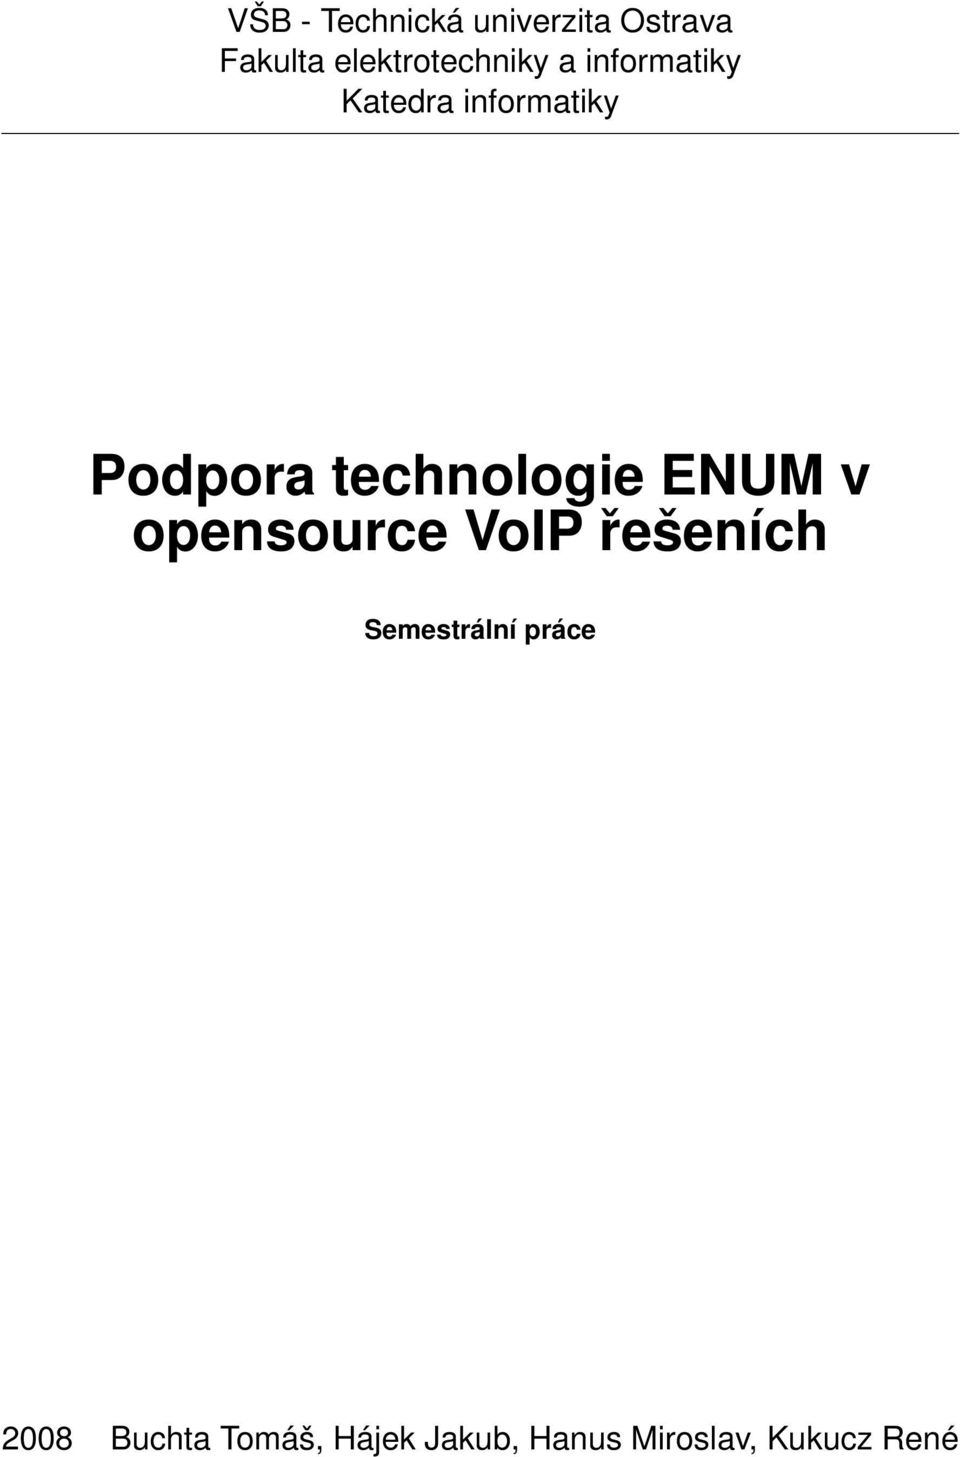 Podpora technologie ENUM v opensource VoIP řešeních